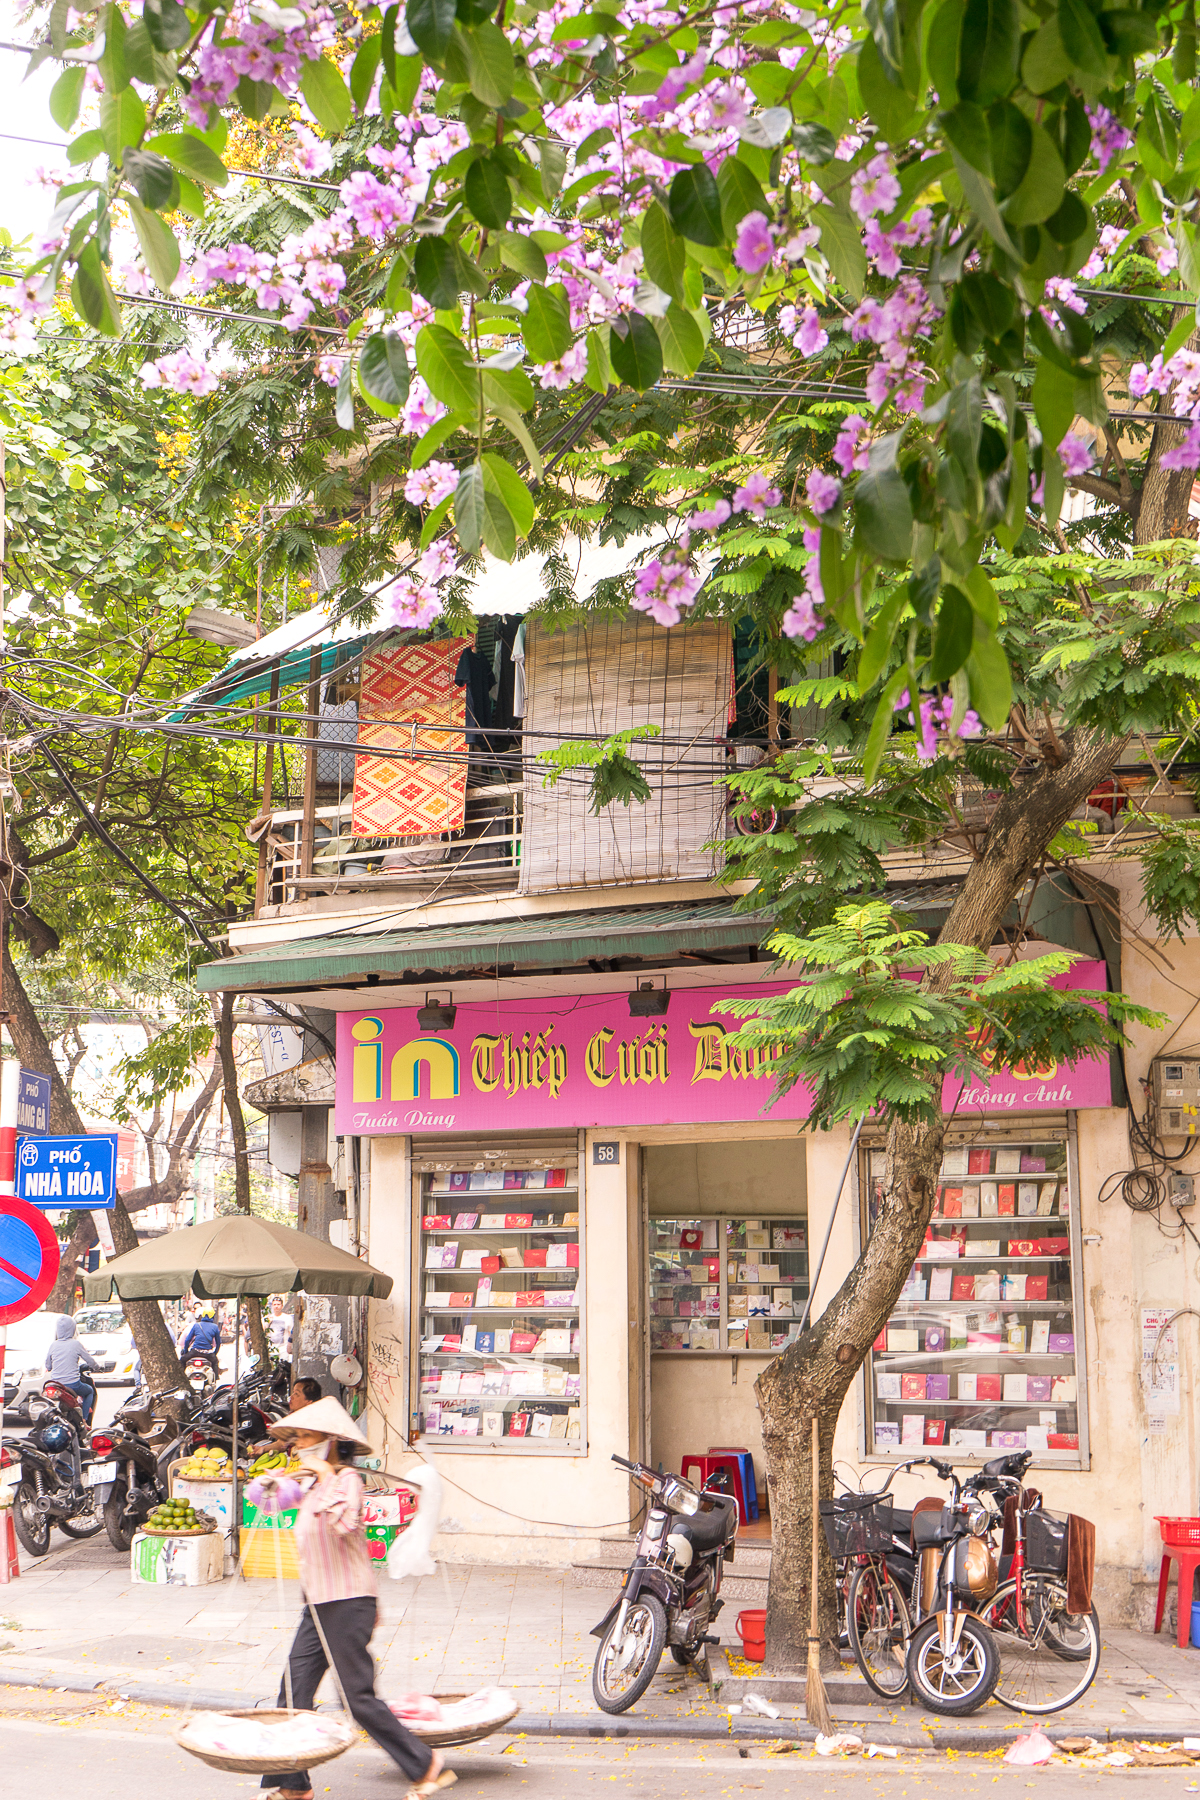 A Hanoi corner through the lens of for91days.com